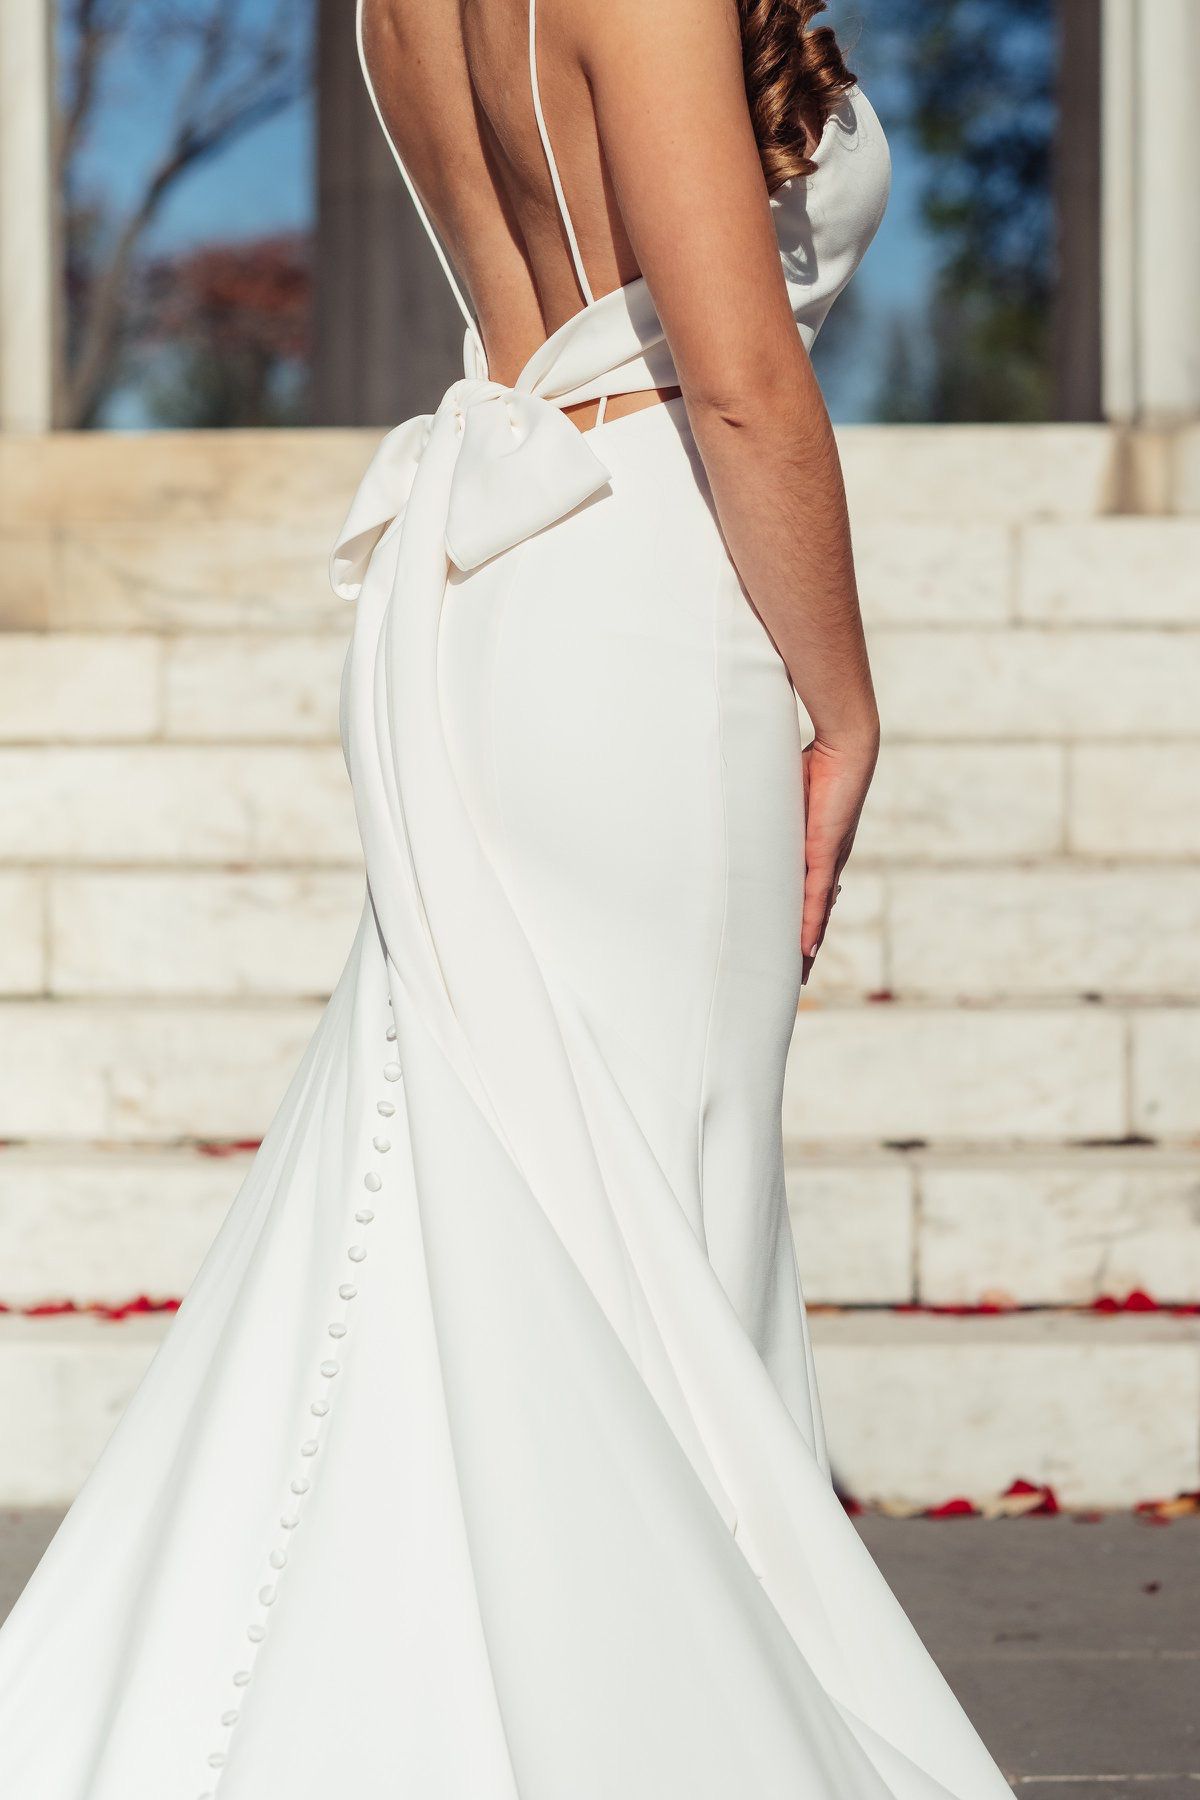 Elegant Wedding Dress and Spanish-style veil (size 4-6)